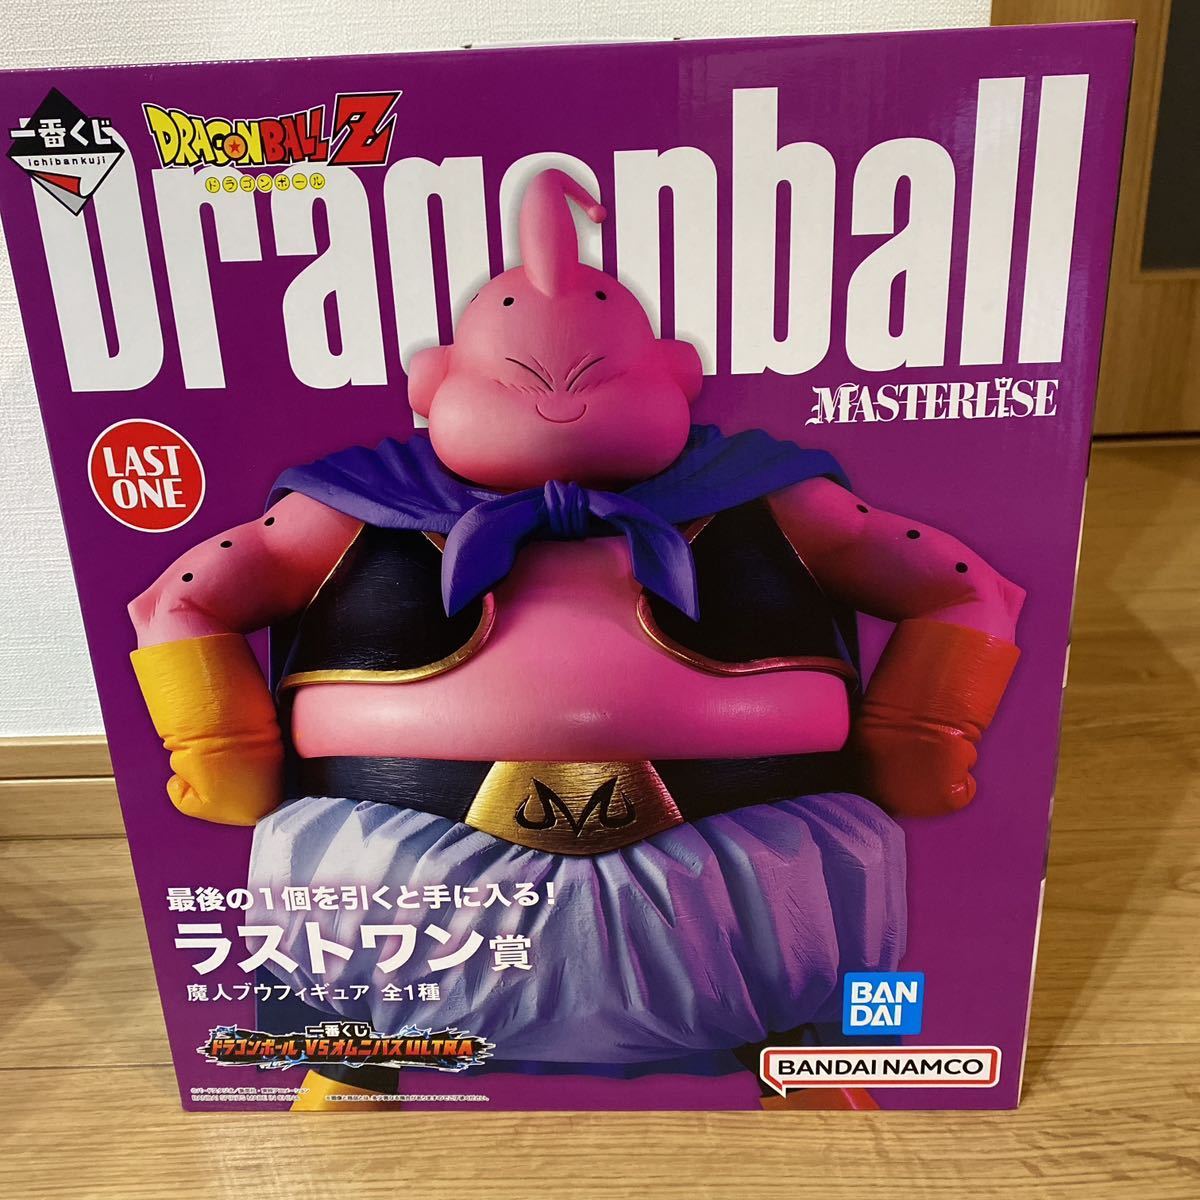 ドラゴンボール一番くじ魔人ブウラストワン賞商品细节| Yahoo! JAPAN